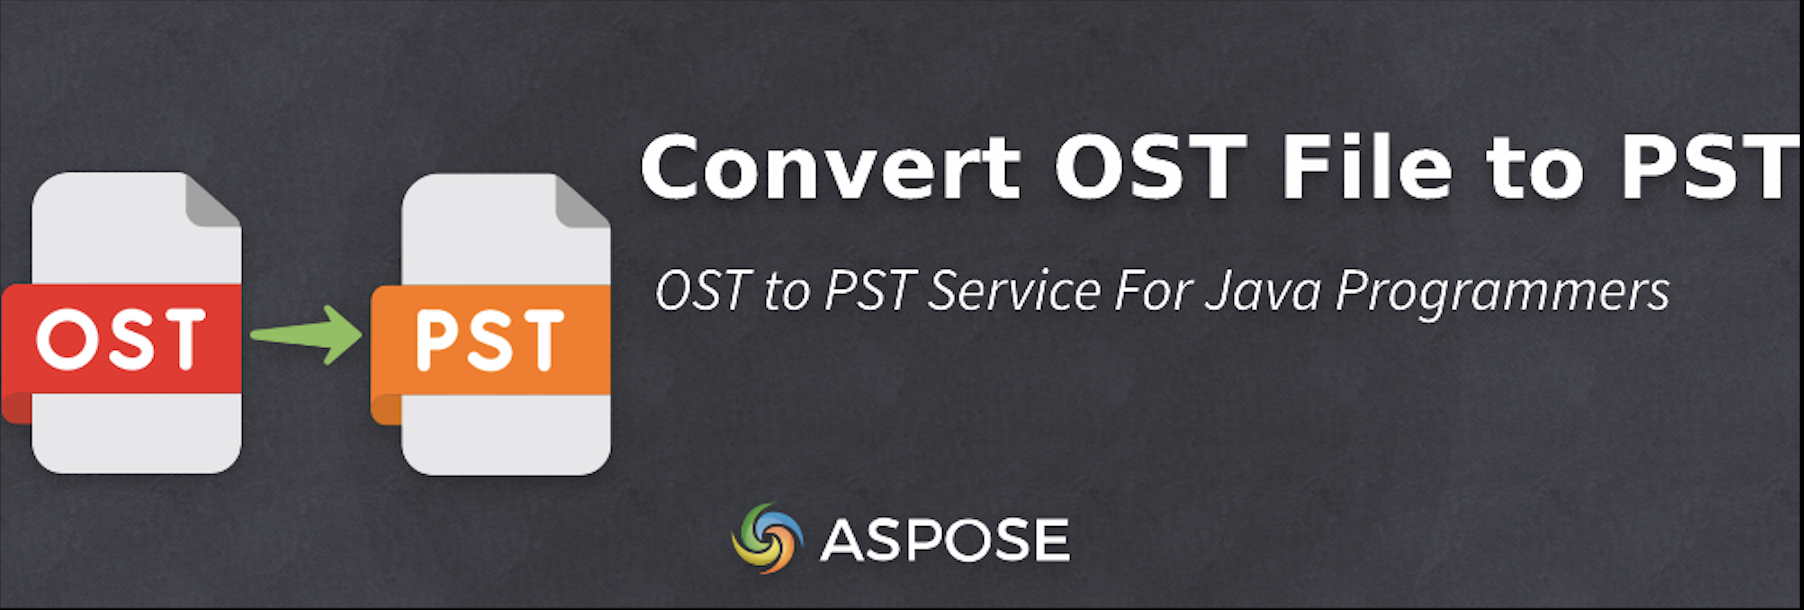 使用 Java 将 OST 文件转换为 PST - 免费 OST 到 PST 转换器